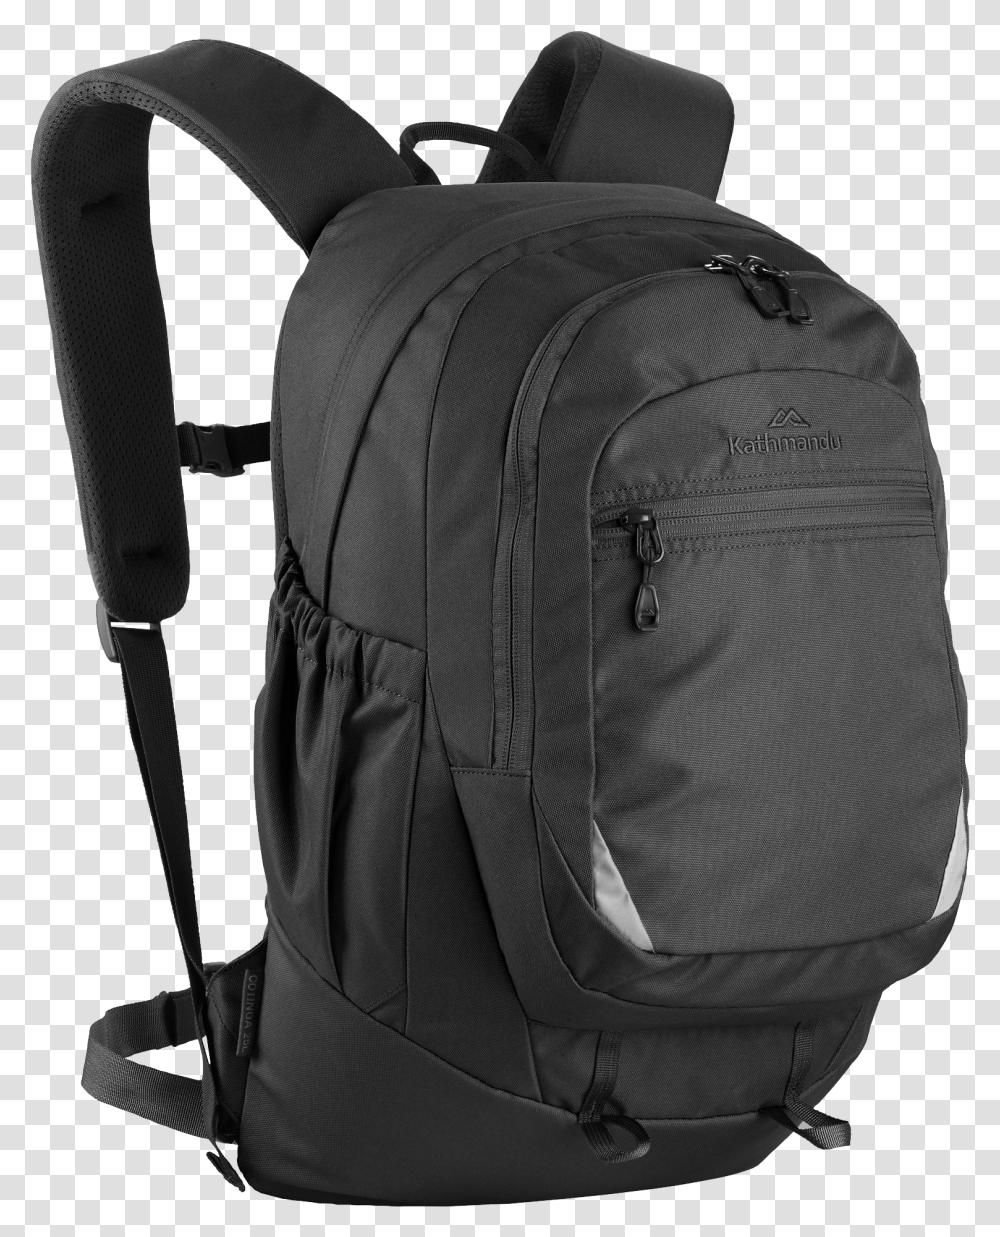 Download Backpack Outdoor Image For Backpack Background, Bag Transparent Png